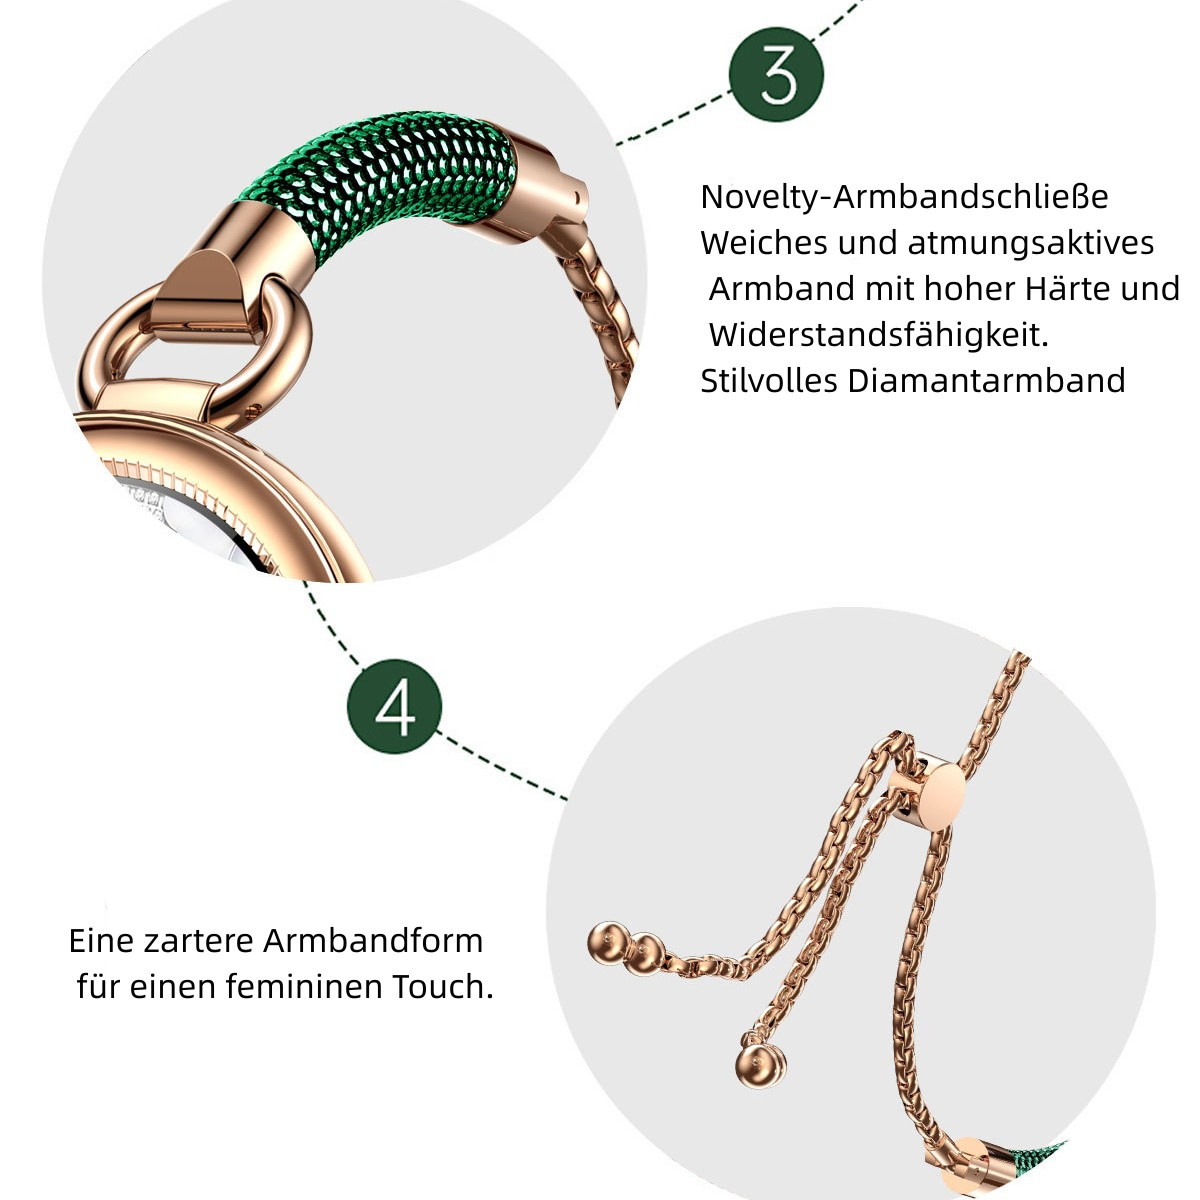 Metall, herzfrequenz uhr blutdruck gold sport mode Weiß gesundheit Armband business Smartwatch armband BRIGHTAKE